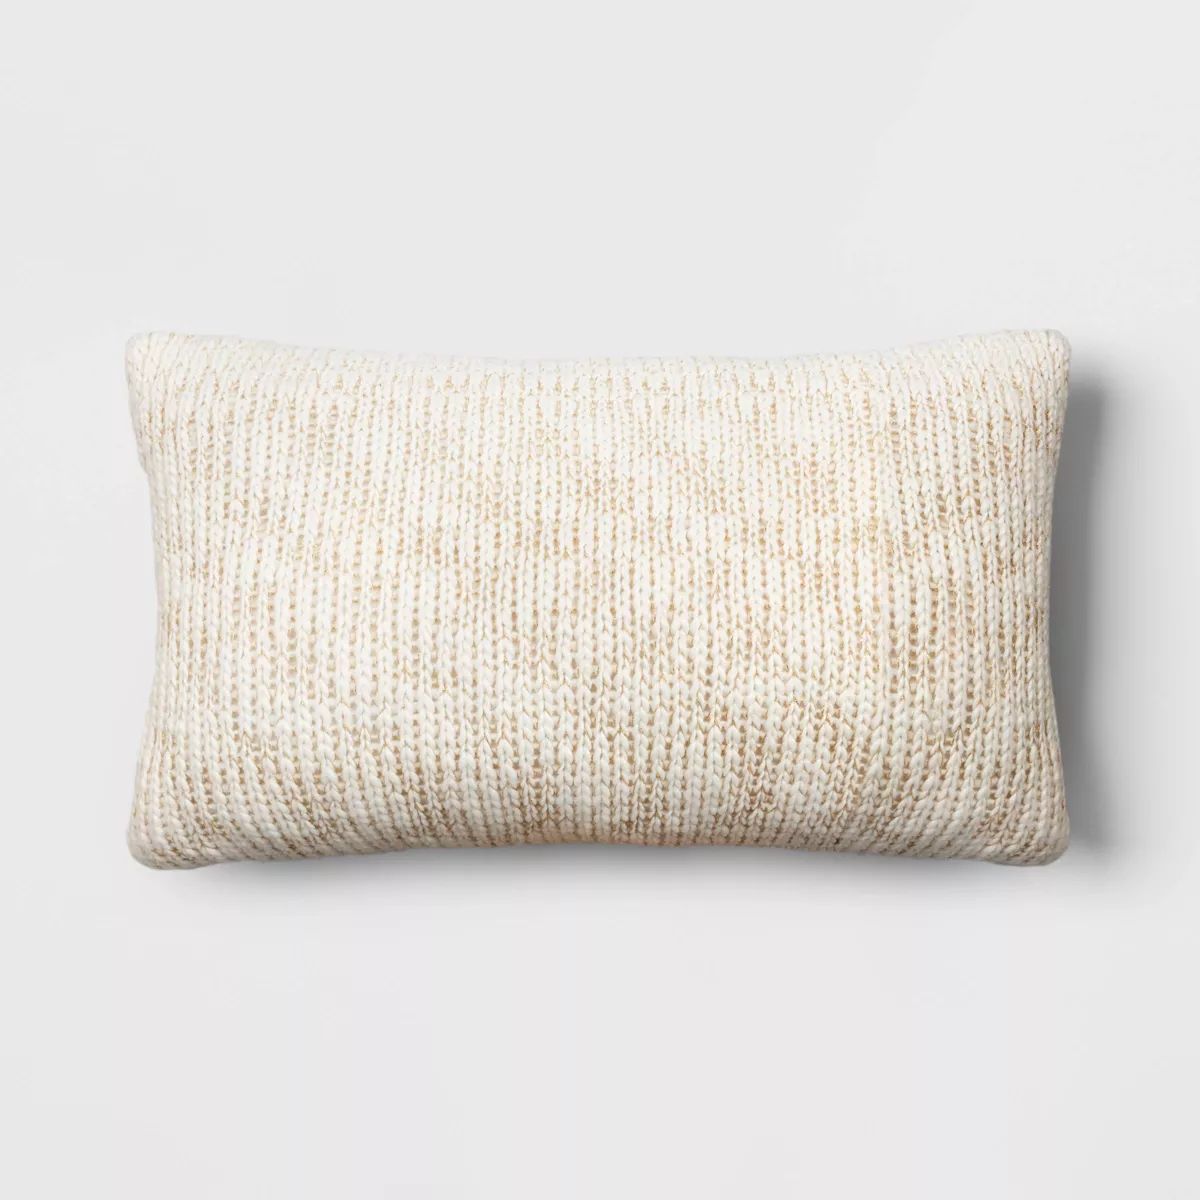 Oversized Metallic Knit Square Lumbar Throw Pillow Ivory - Threshold™ | Target